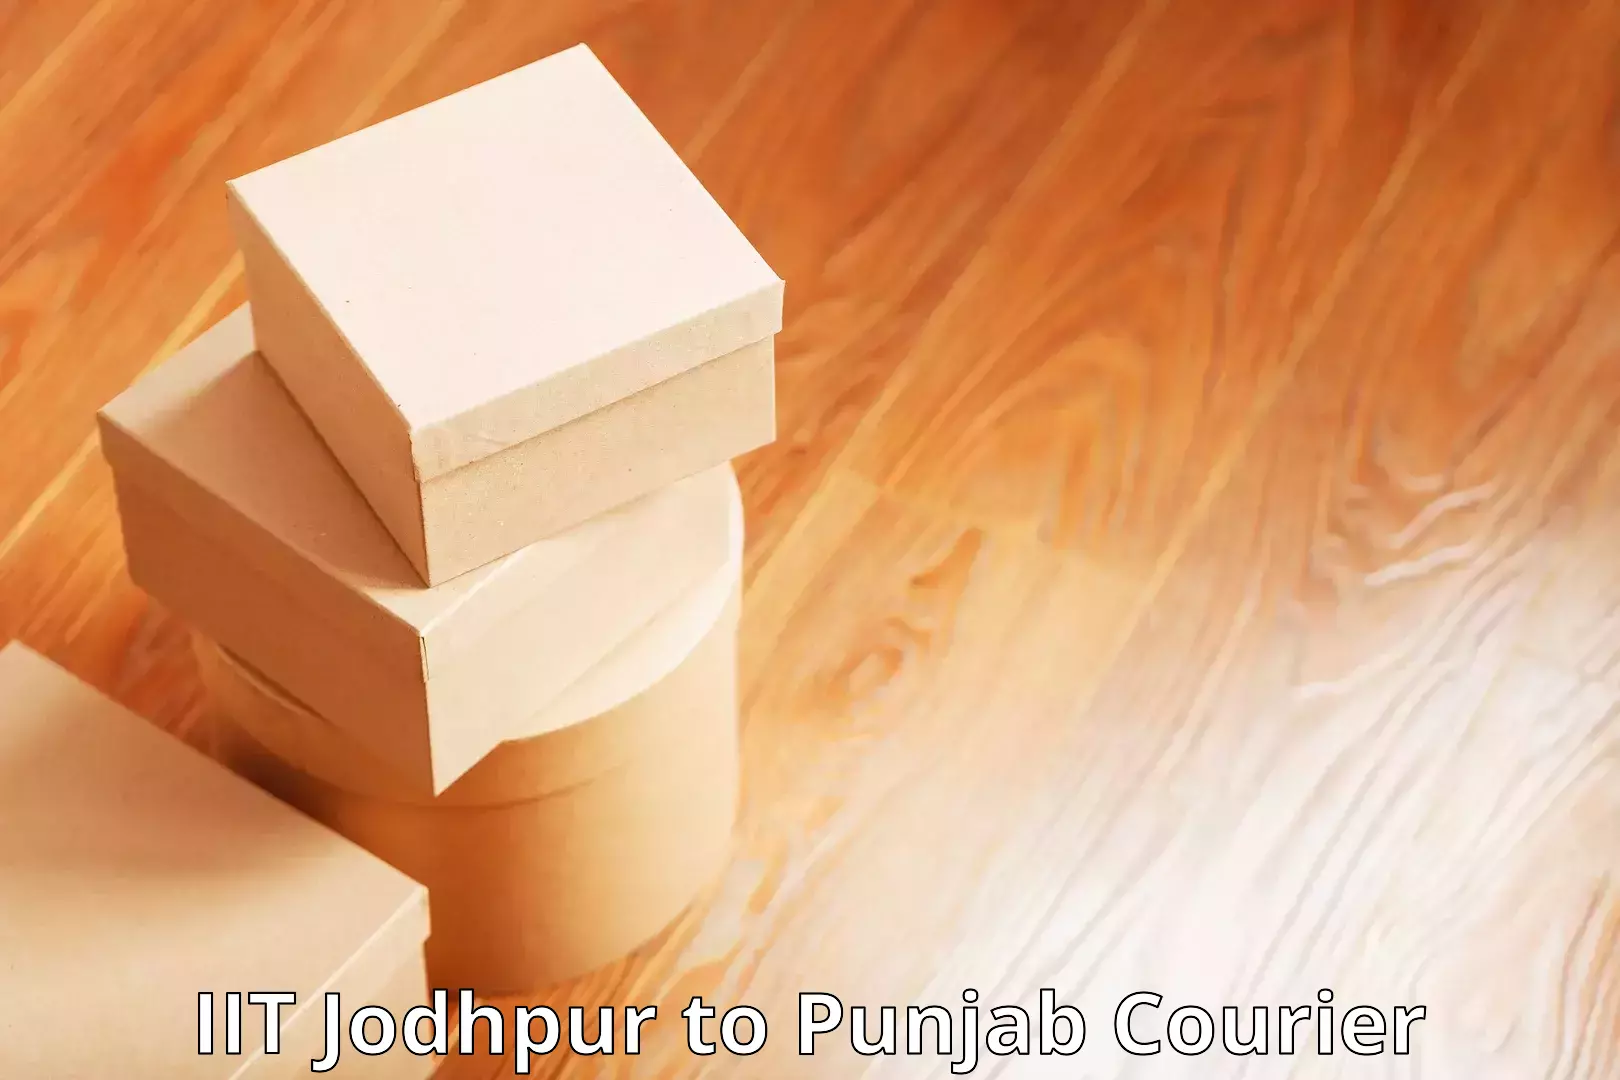 Quick courier services in IIT Jodhpur to Gurdaspur